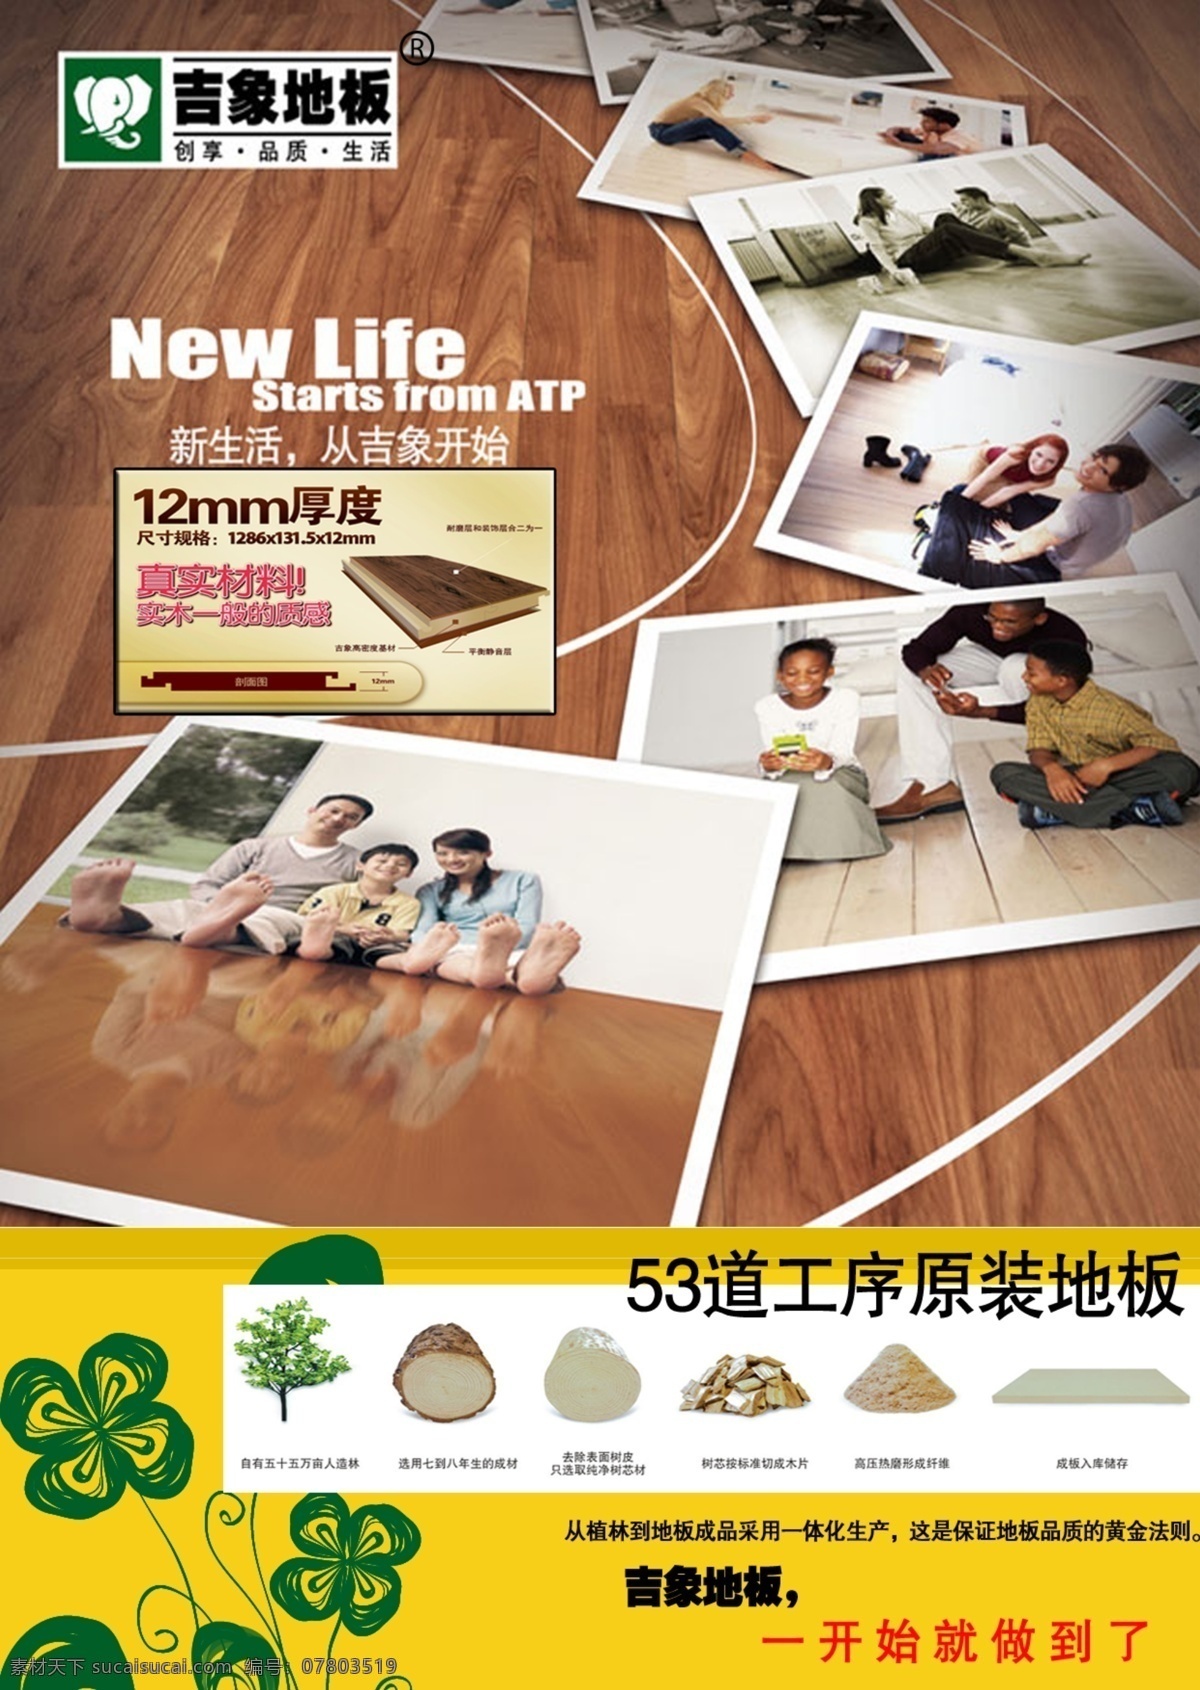 吉象地板 宣传单 dm单 源文件 地板 吉象木业 新生活 dm宣传单 广告设计模板